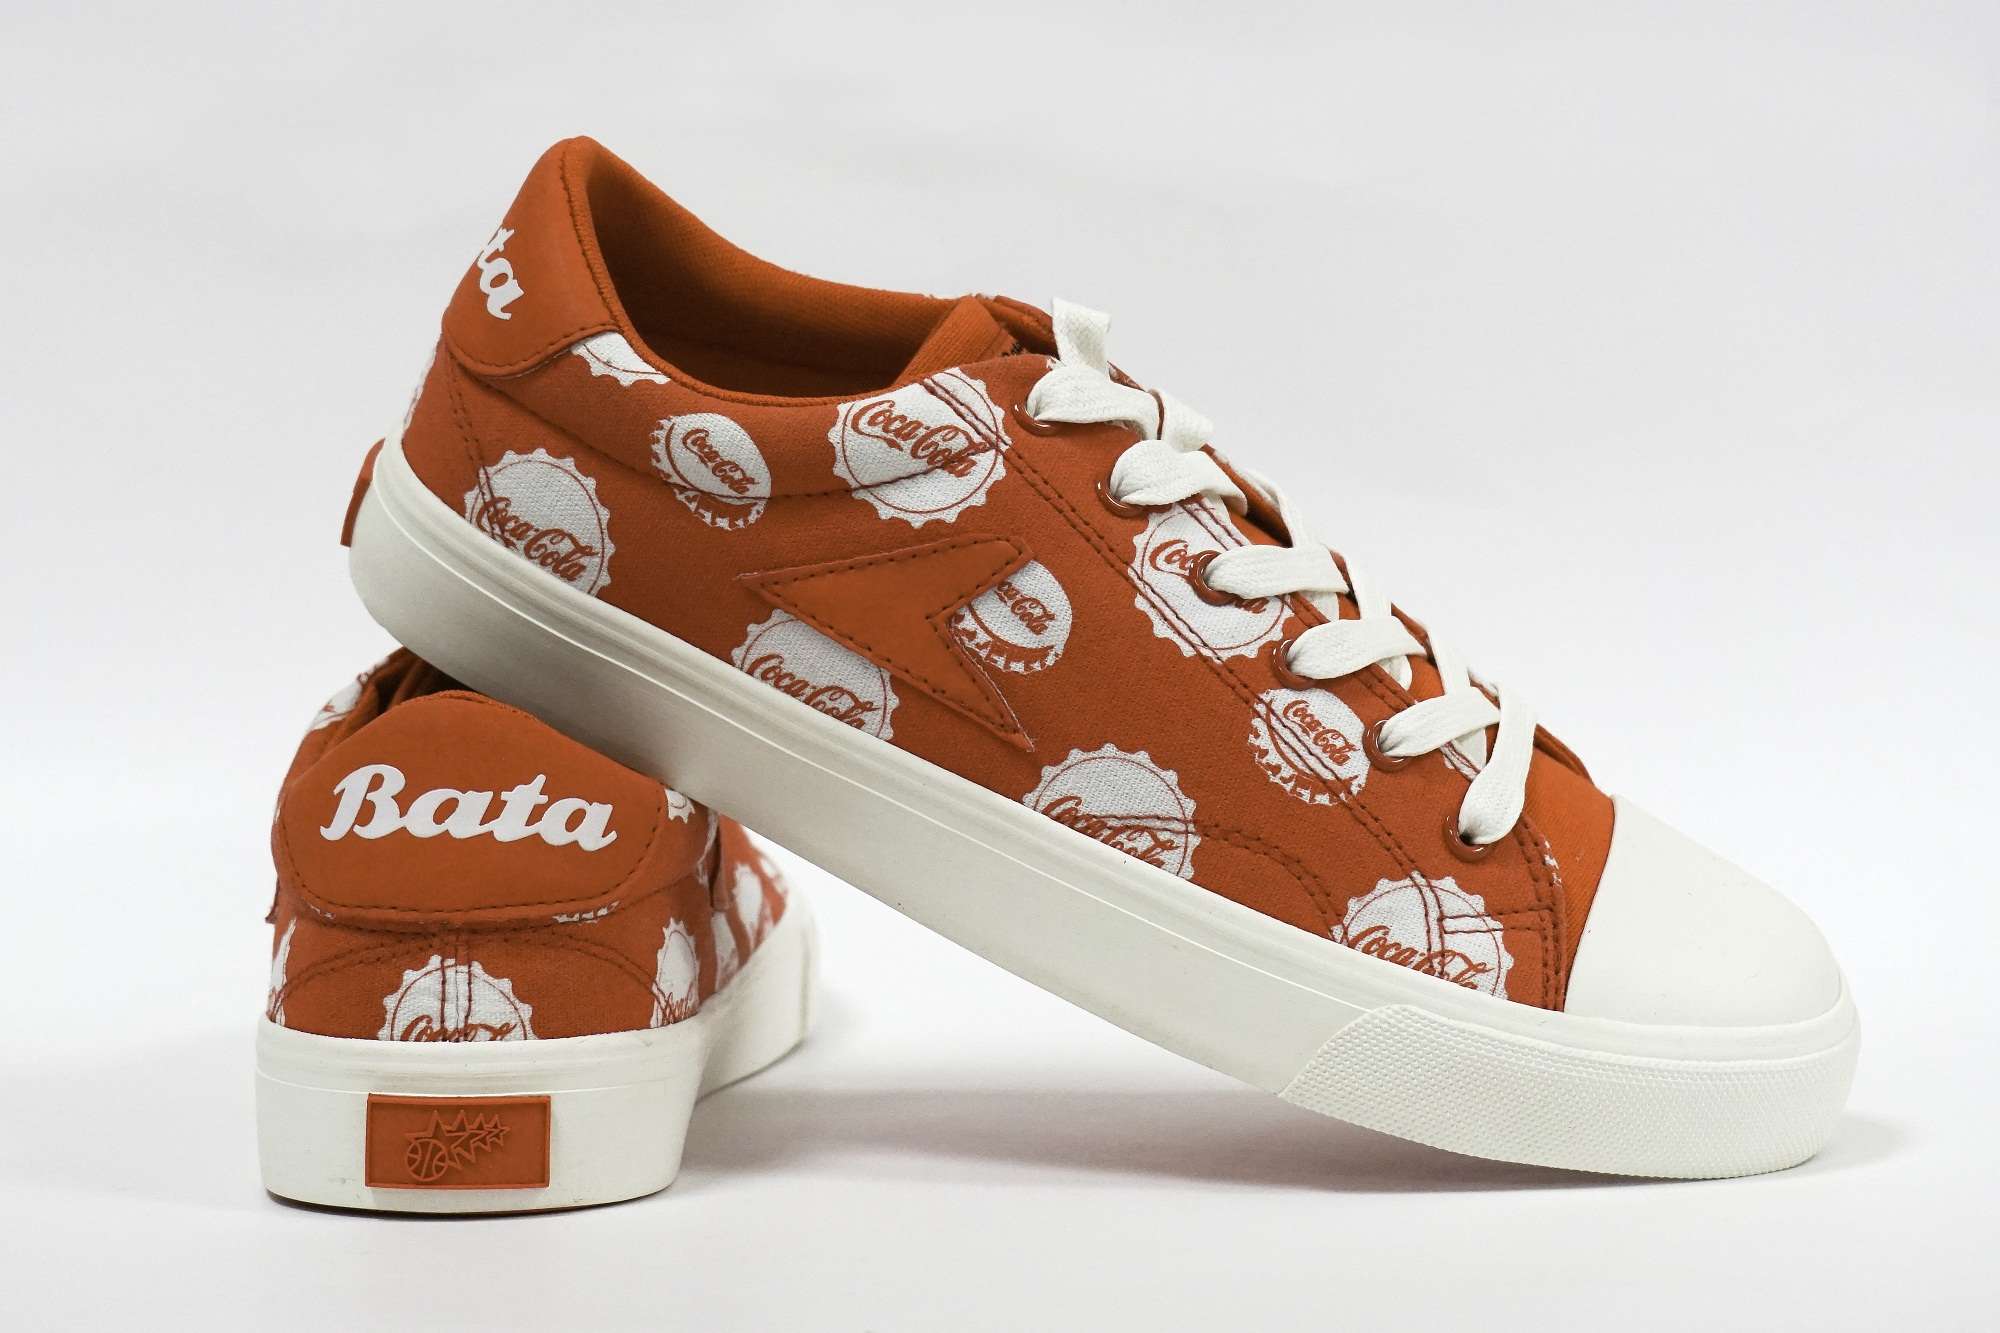 about bata shoes